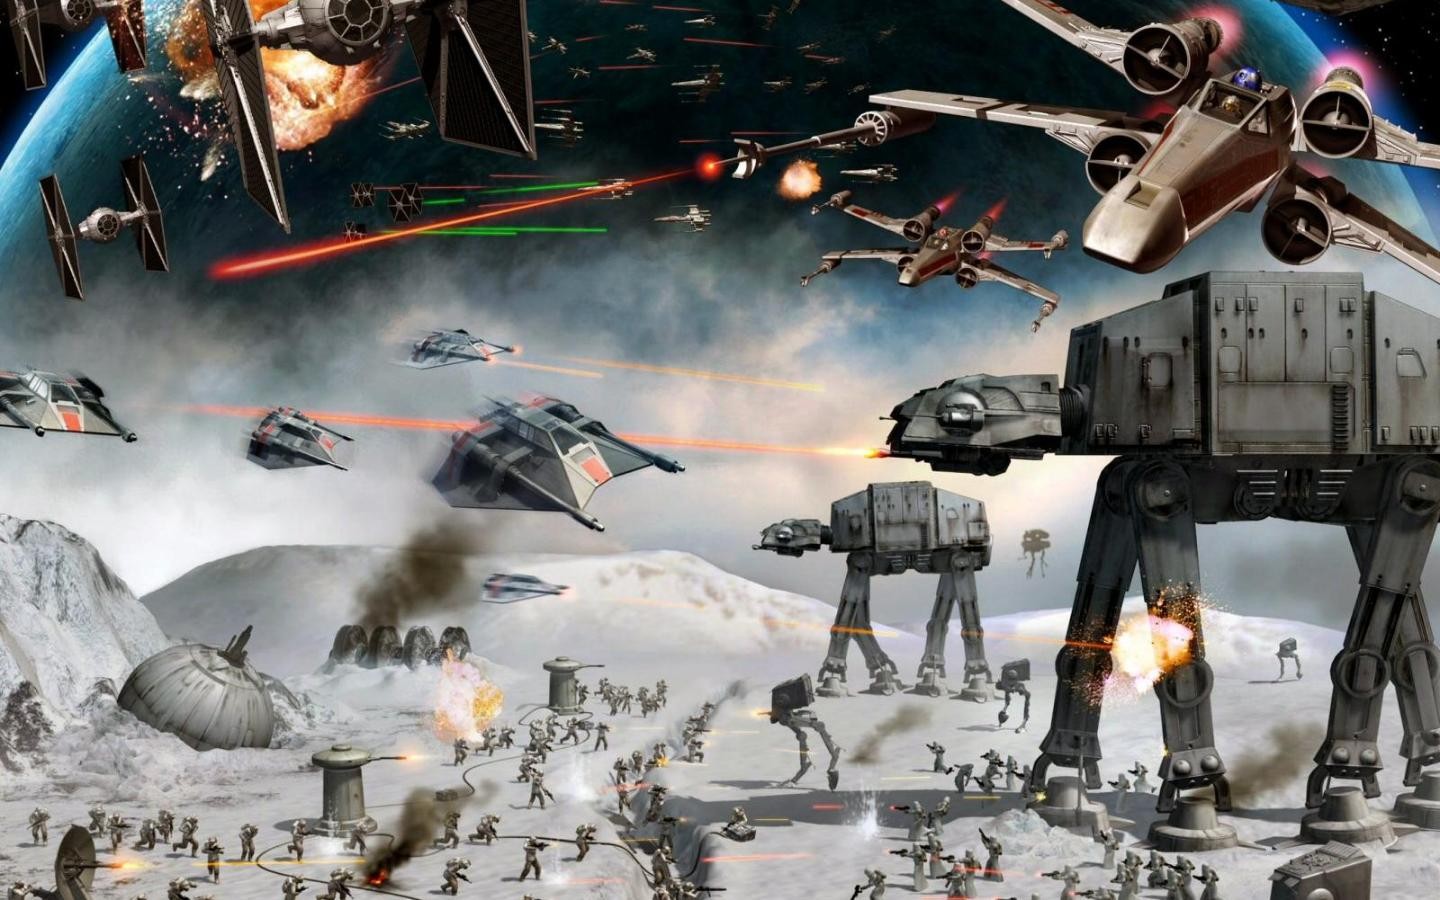 Star Wars Star Wars Ships Hoth Science Fiction AT AT 1440x900